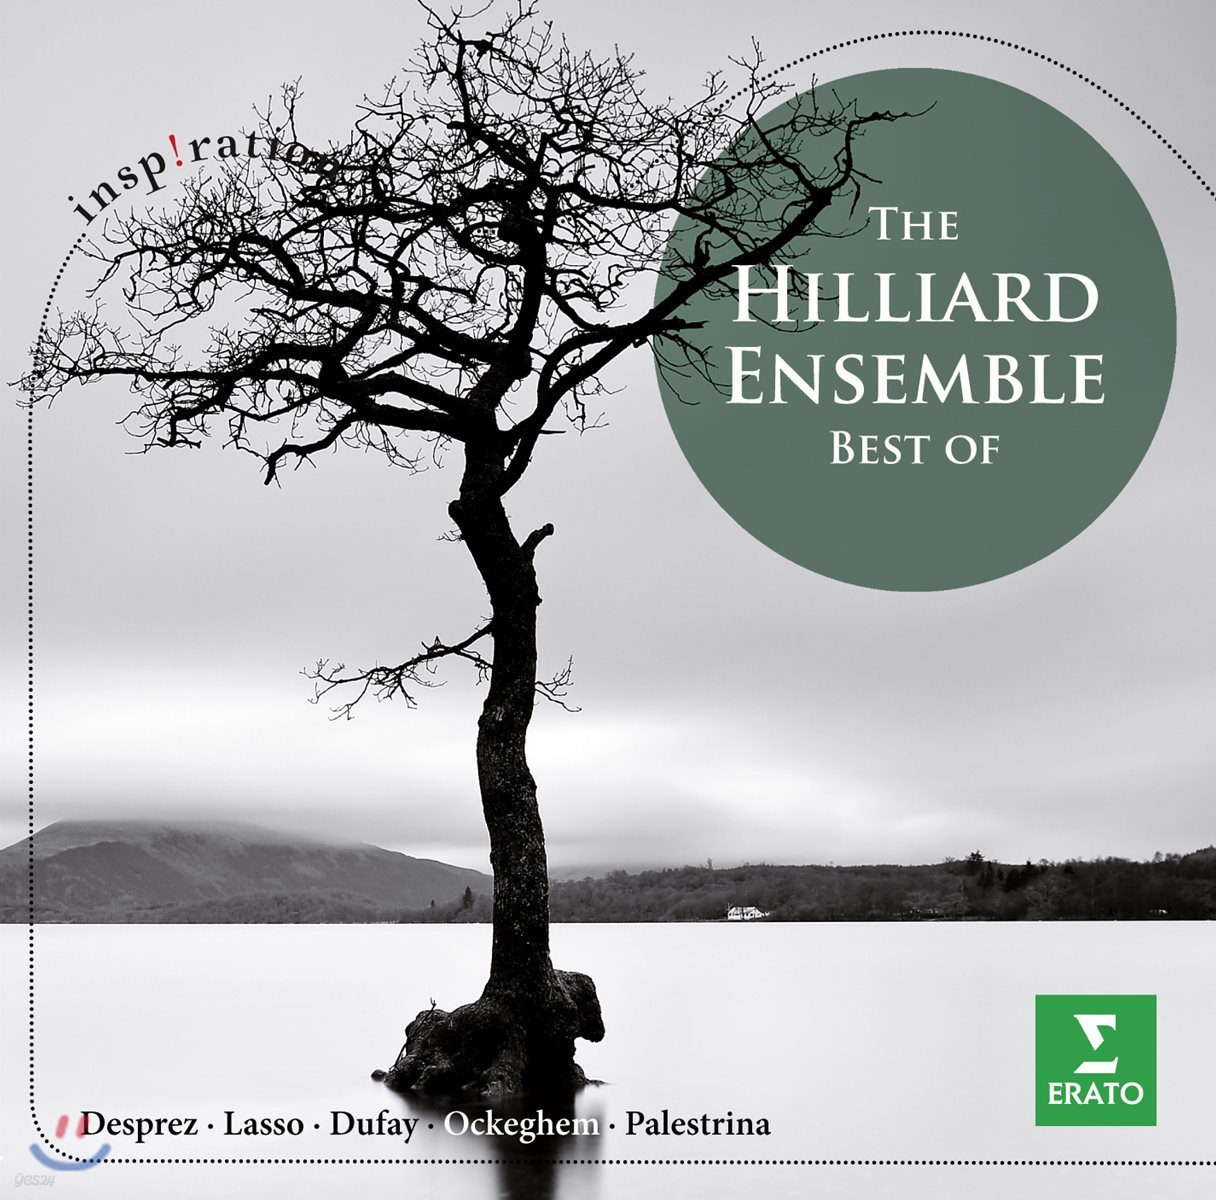 힐리어드 앙상블 베스트 - 데프레 / 라소 / 뒤파이 / 오케겜 / 팔레스트리나 (The Hilliard Ensemble Best Of)